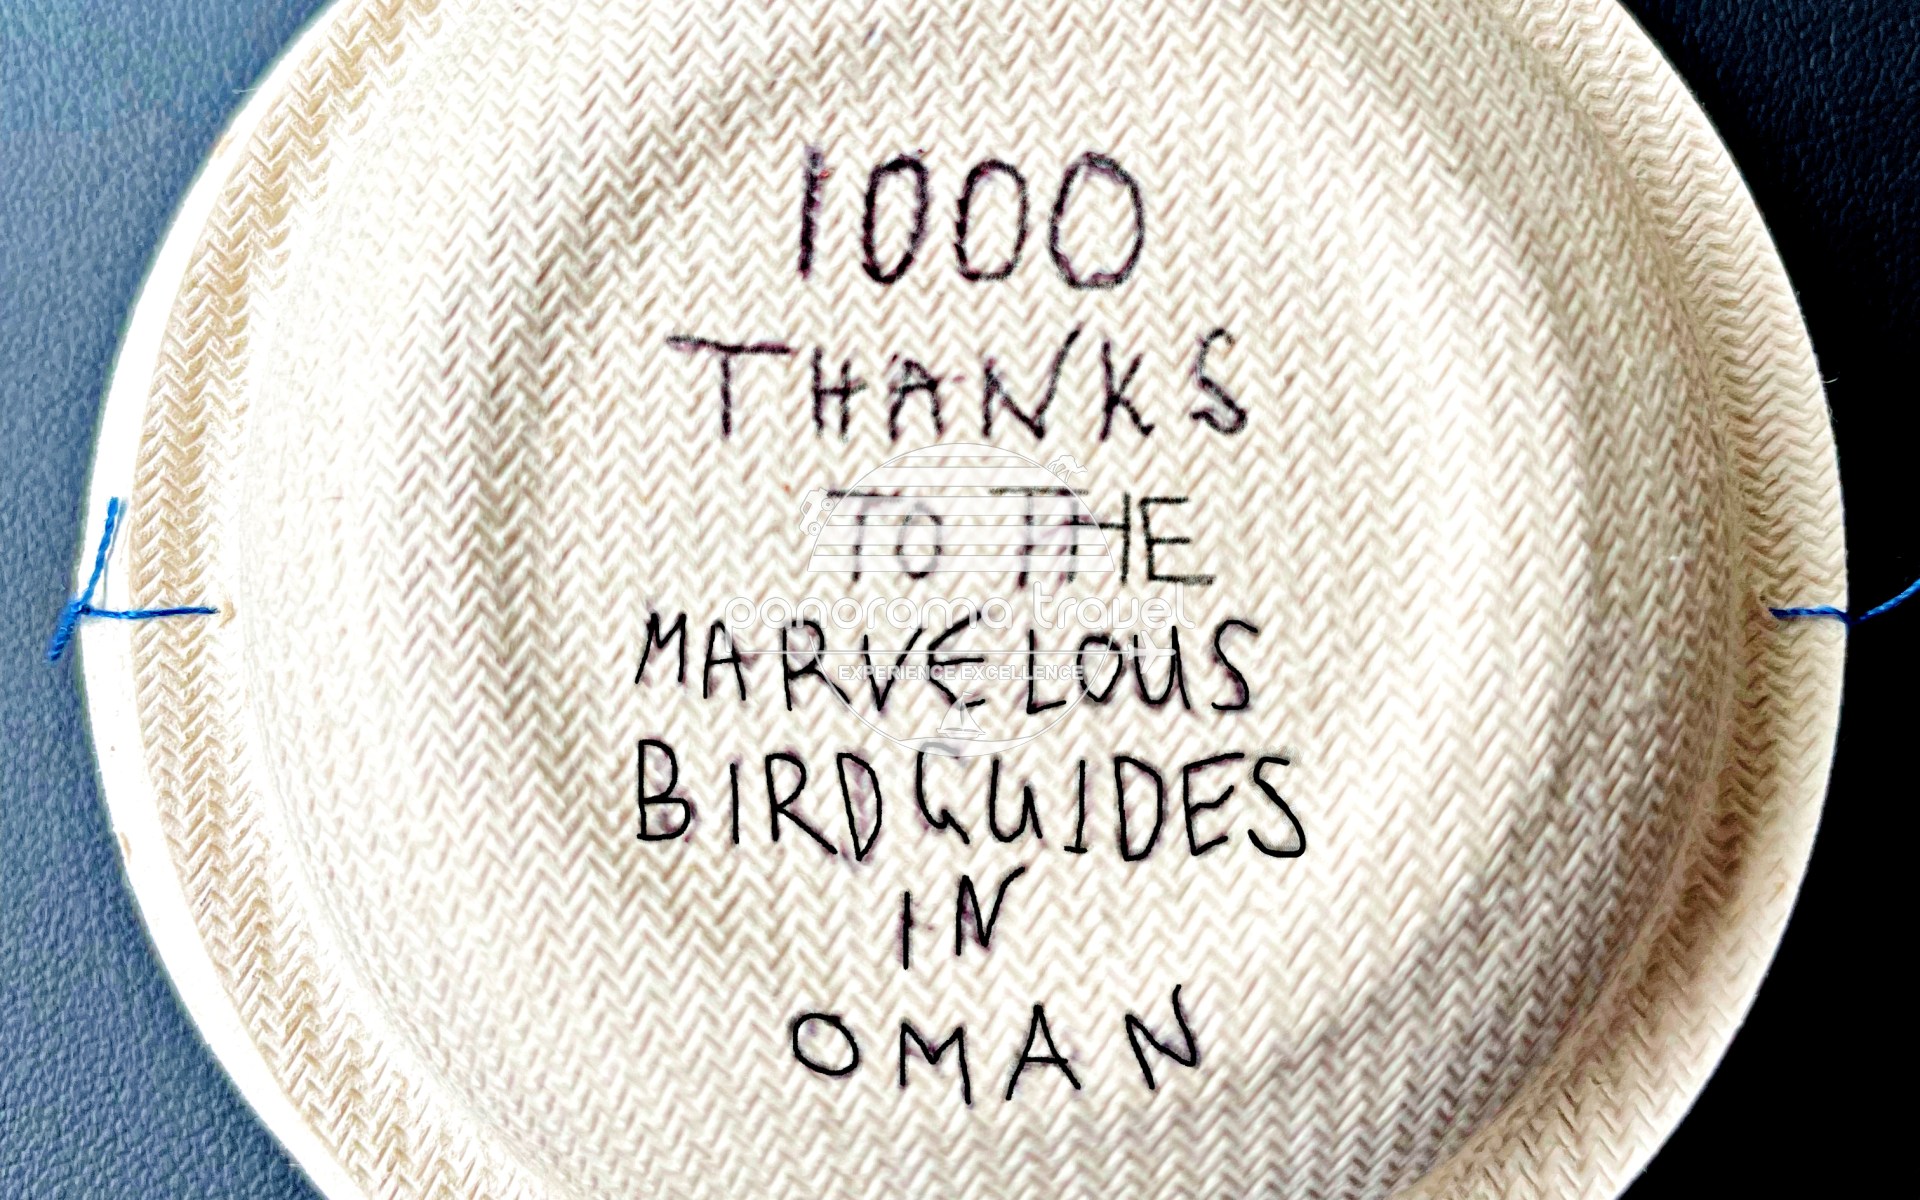 Oman Birdwatching Tours